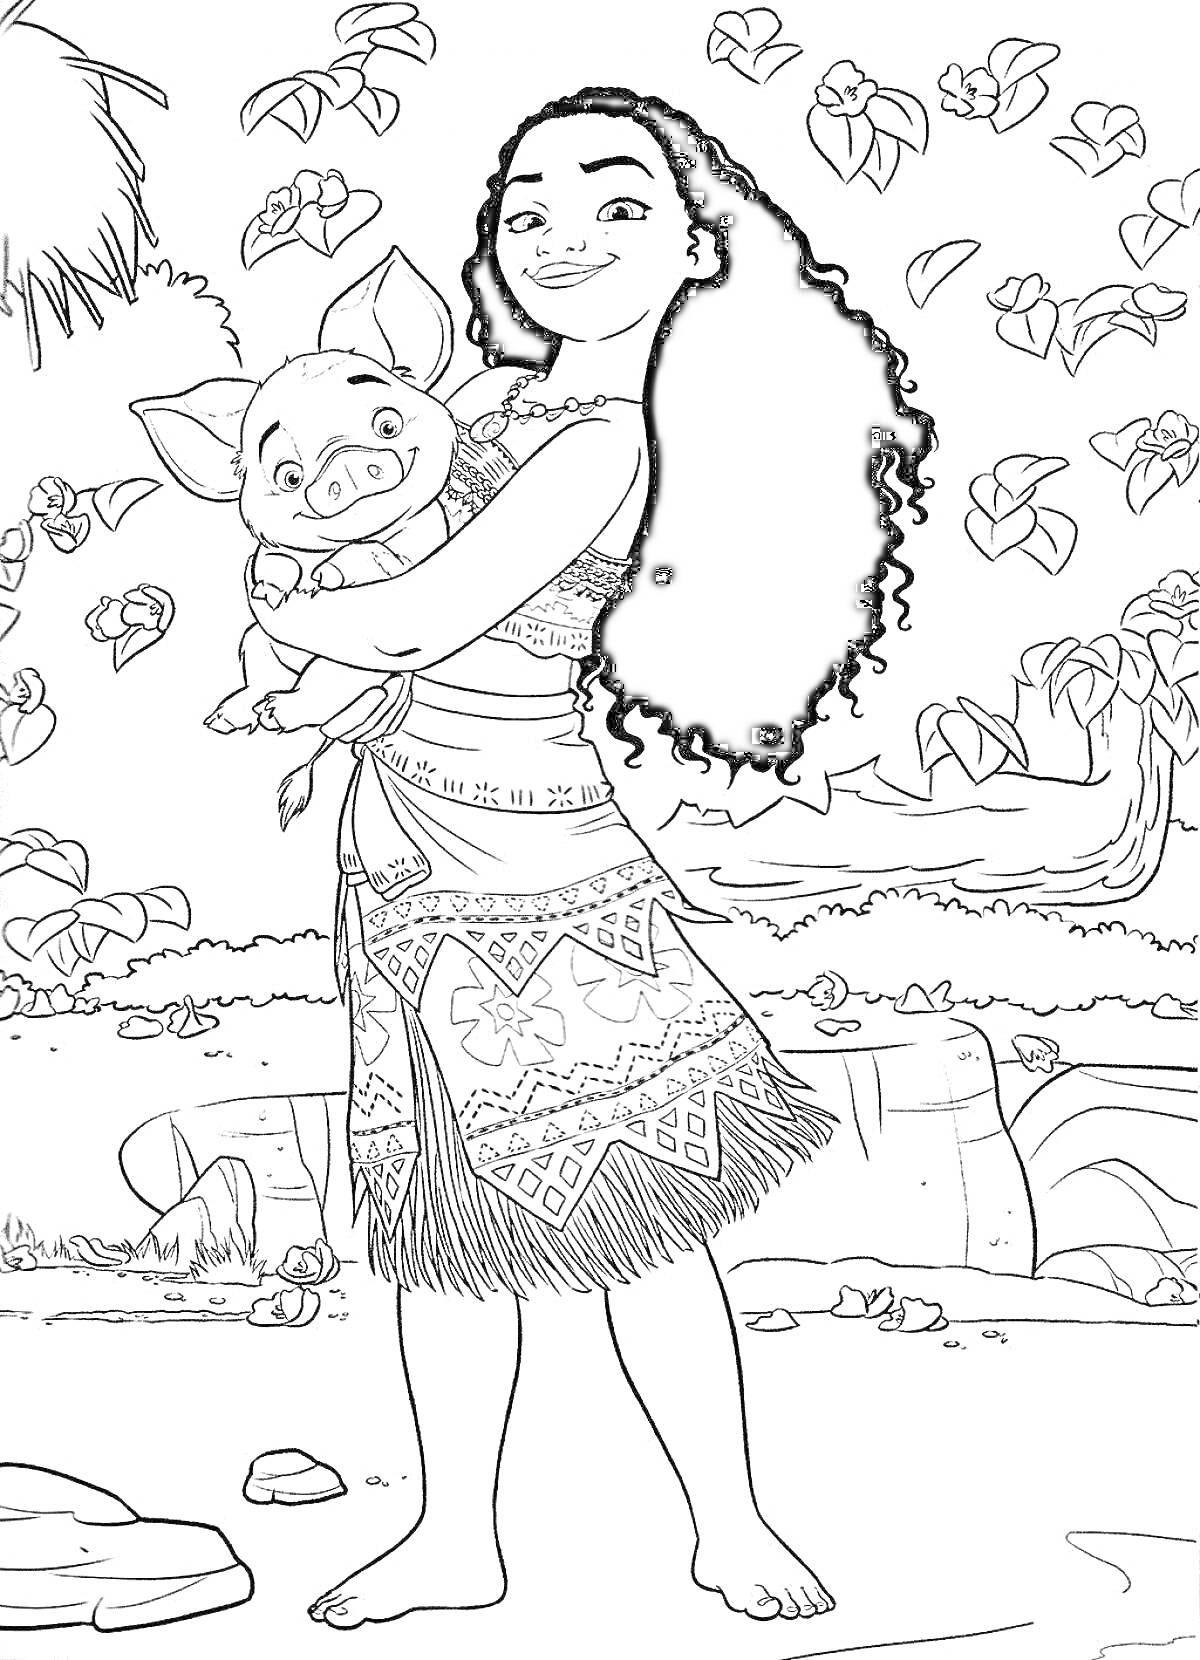 Раскраска Девочка с длинными волосами и поросенком на руках на фоне тропического пейзажа, деревьев и листьев.